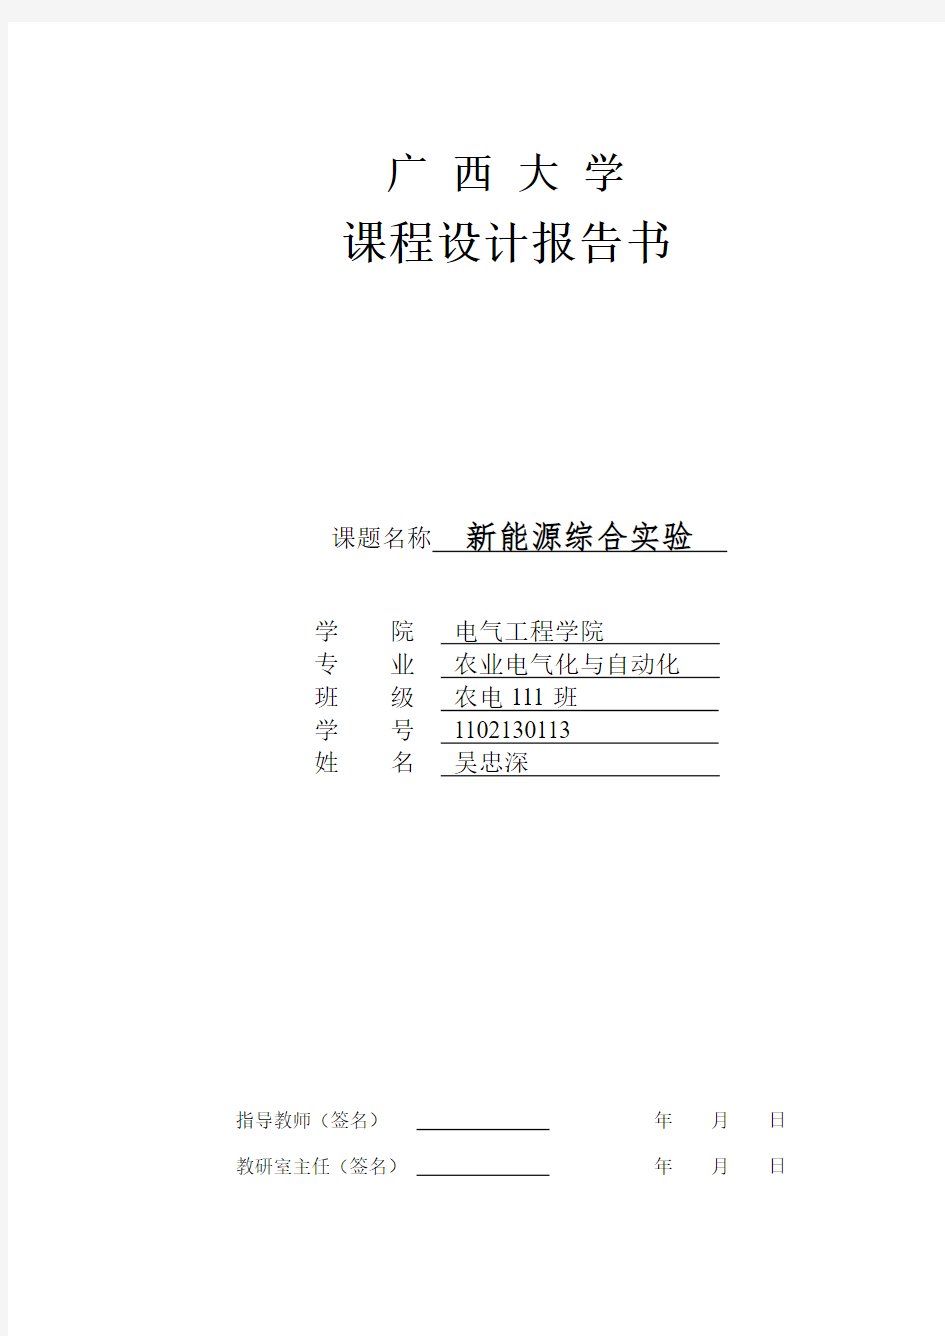 新能源综合实验报告完整版上交板.pdf